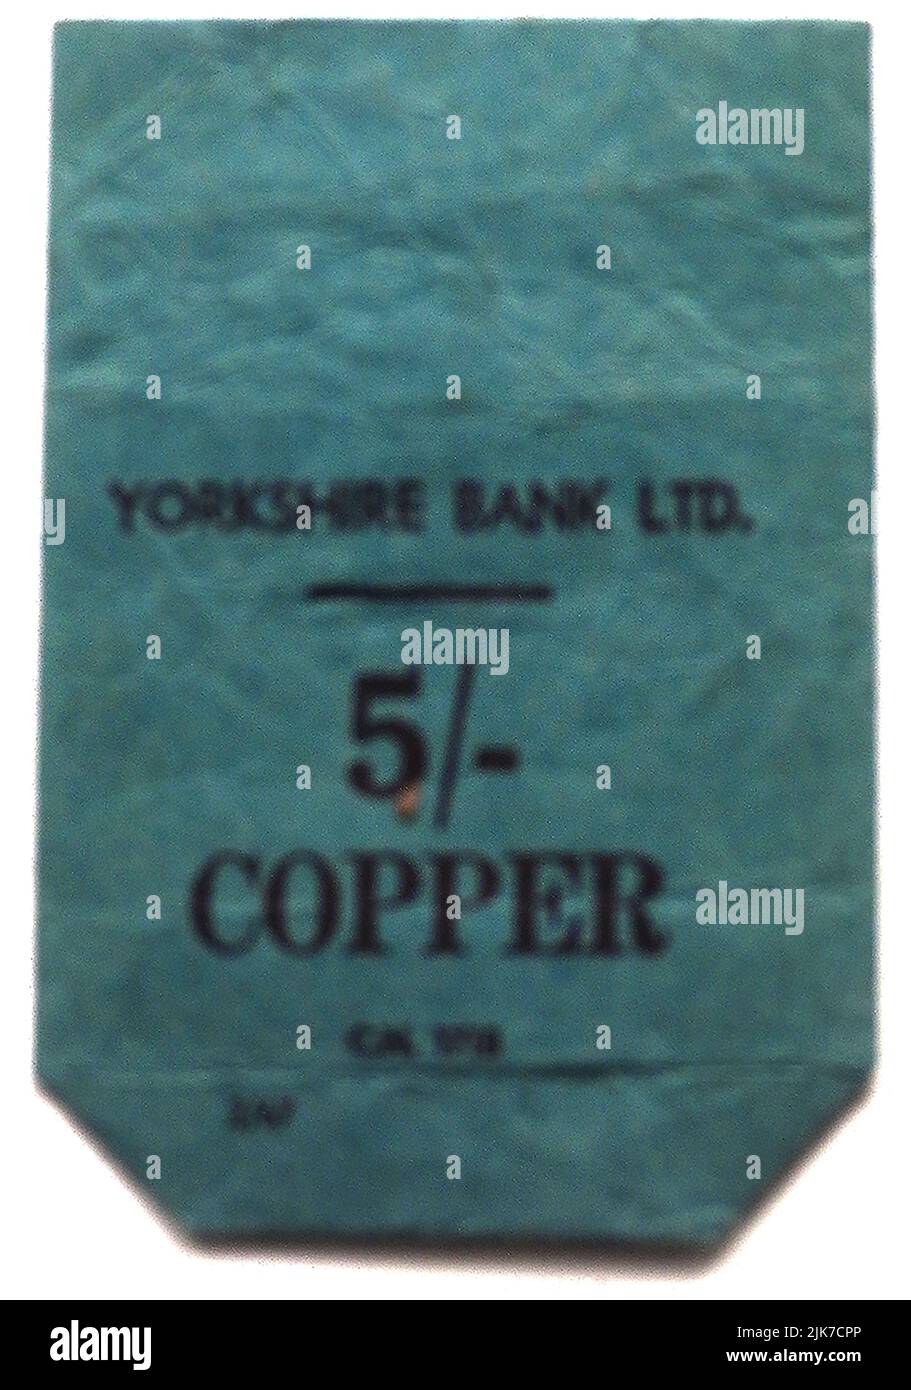 MONEY BAG - una vecchia borsa di carta British Yorkshire Bank per contenere cinque scellini (colloquialmente, cinque bob) in monete di rame Foto Stock